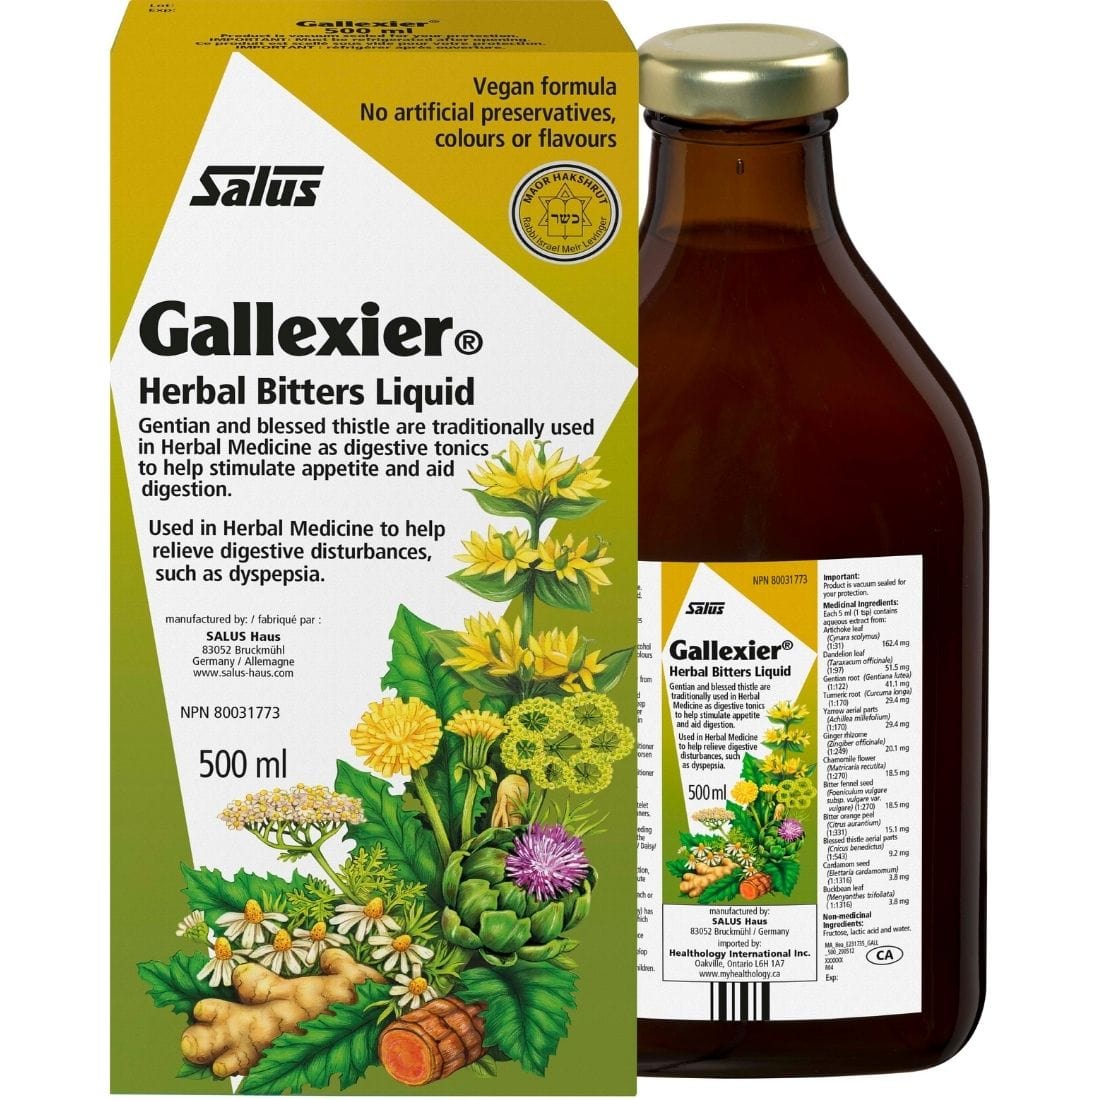 Salus Gallexier Herbal Bitters